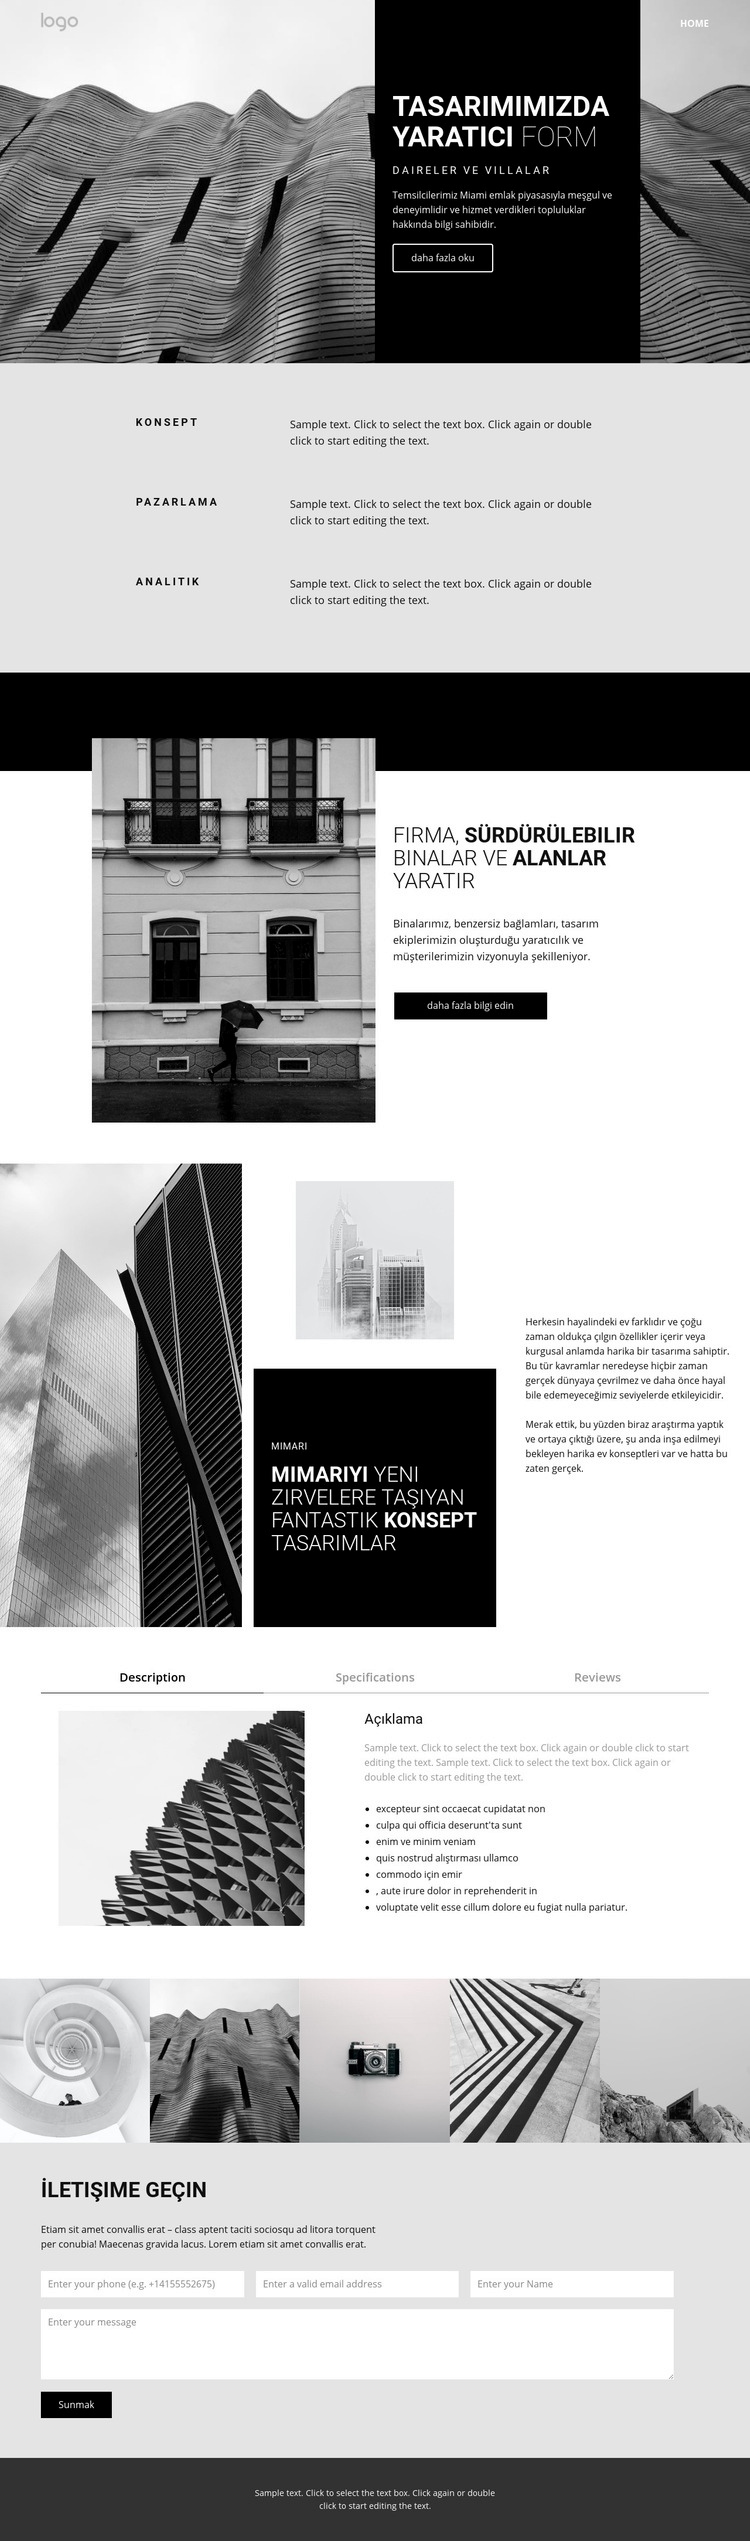 Yaratıcı konsept mimarisi Web sitesi tasarımı